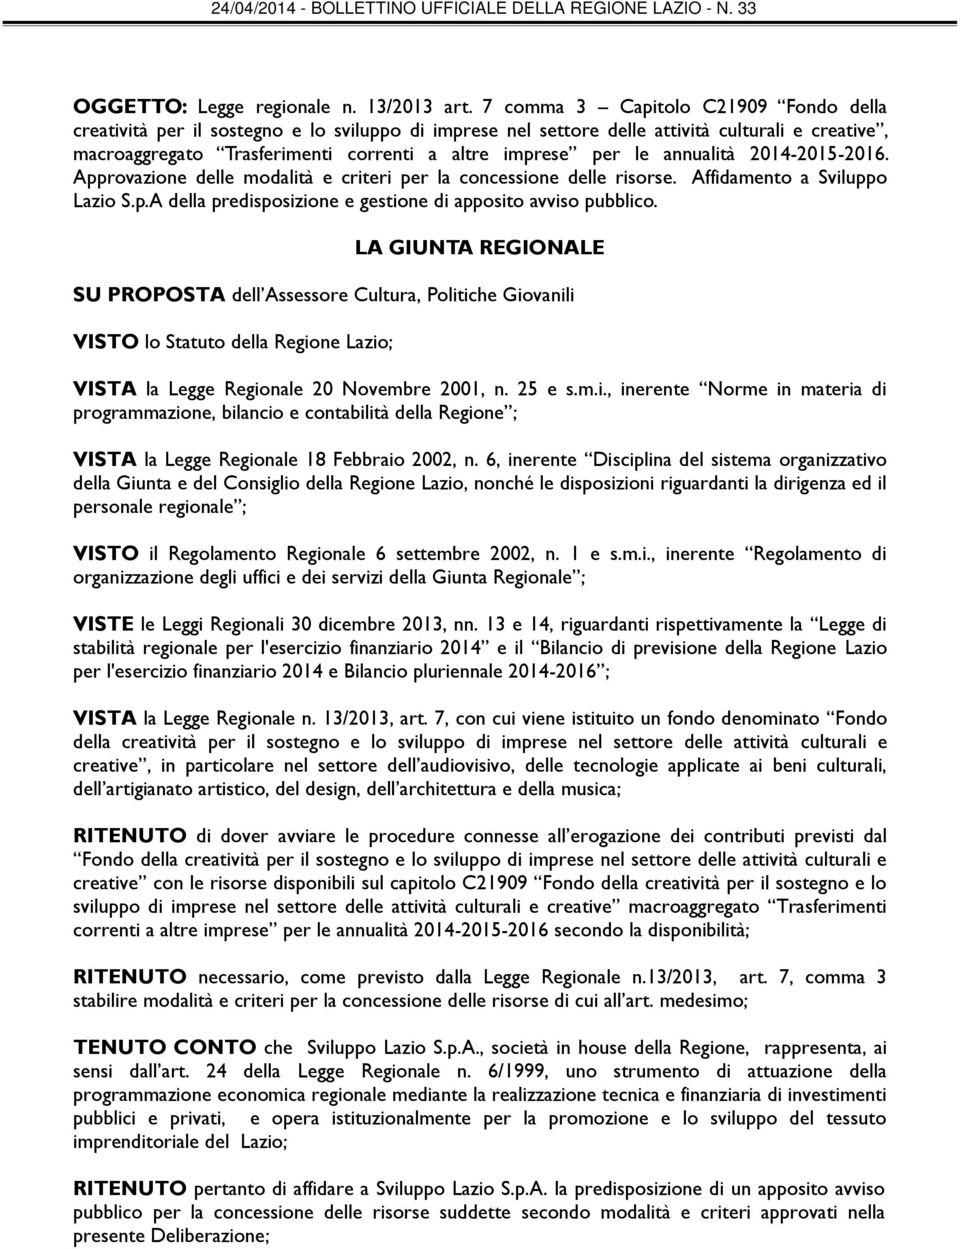 annualità 2014-201-2016. Approvazione delle modalità e criteri per la concessione delle risorse. Affidamento a Sviluppo Lazio S.p.A della predisposizione e gestione di apposito avviso pubblico.